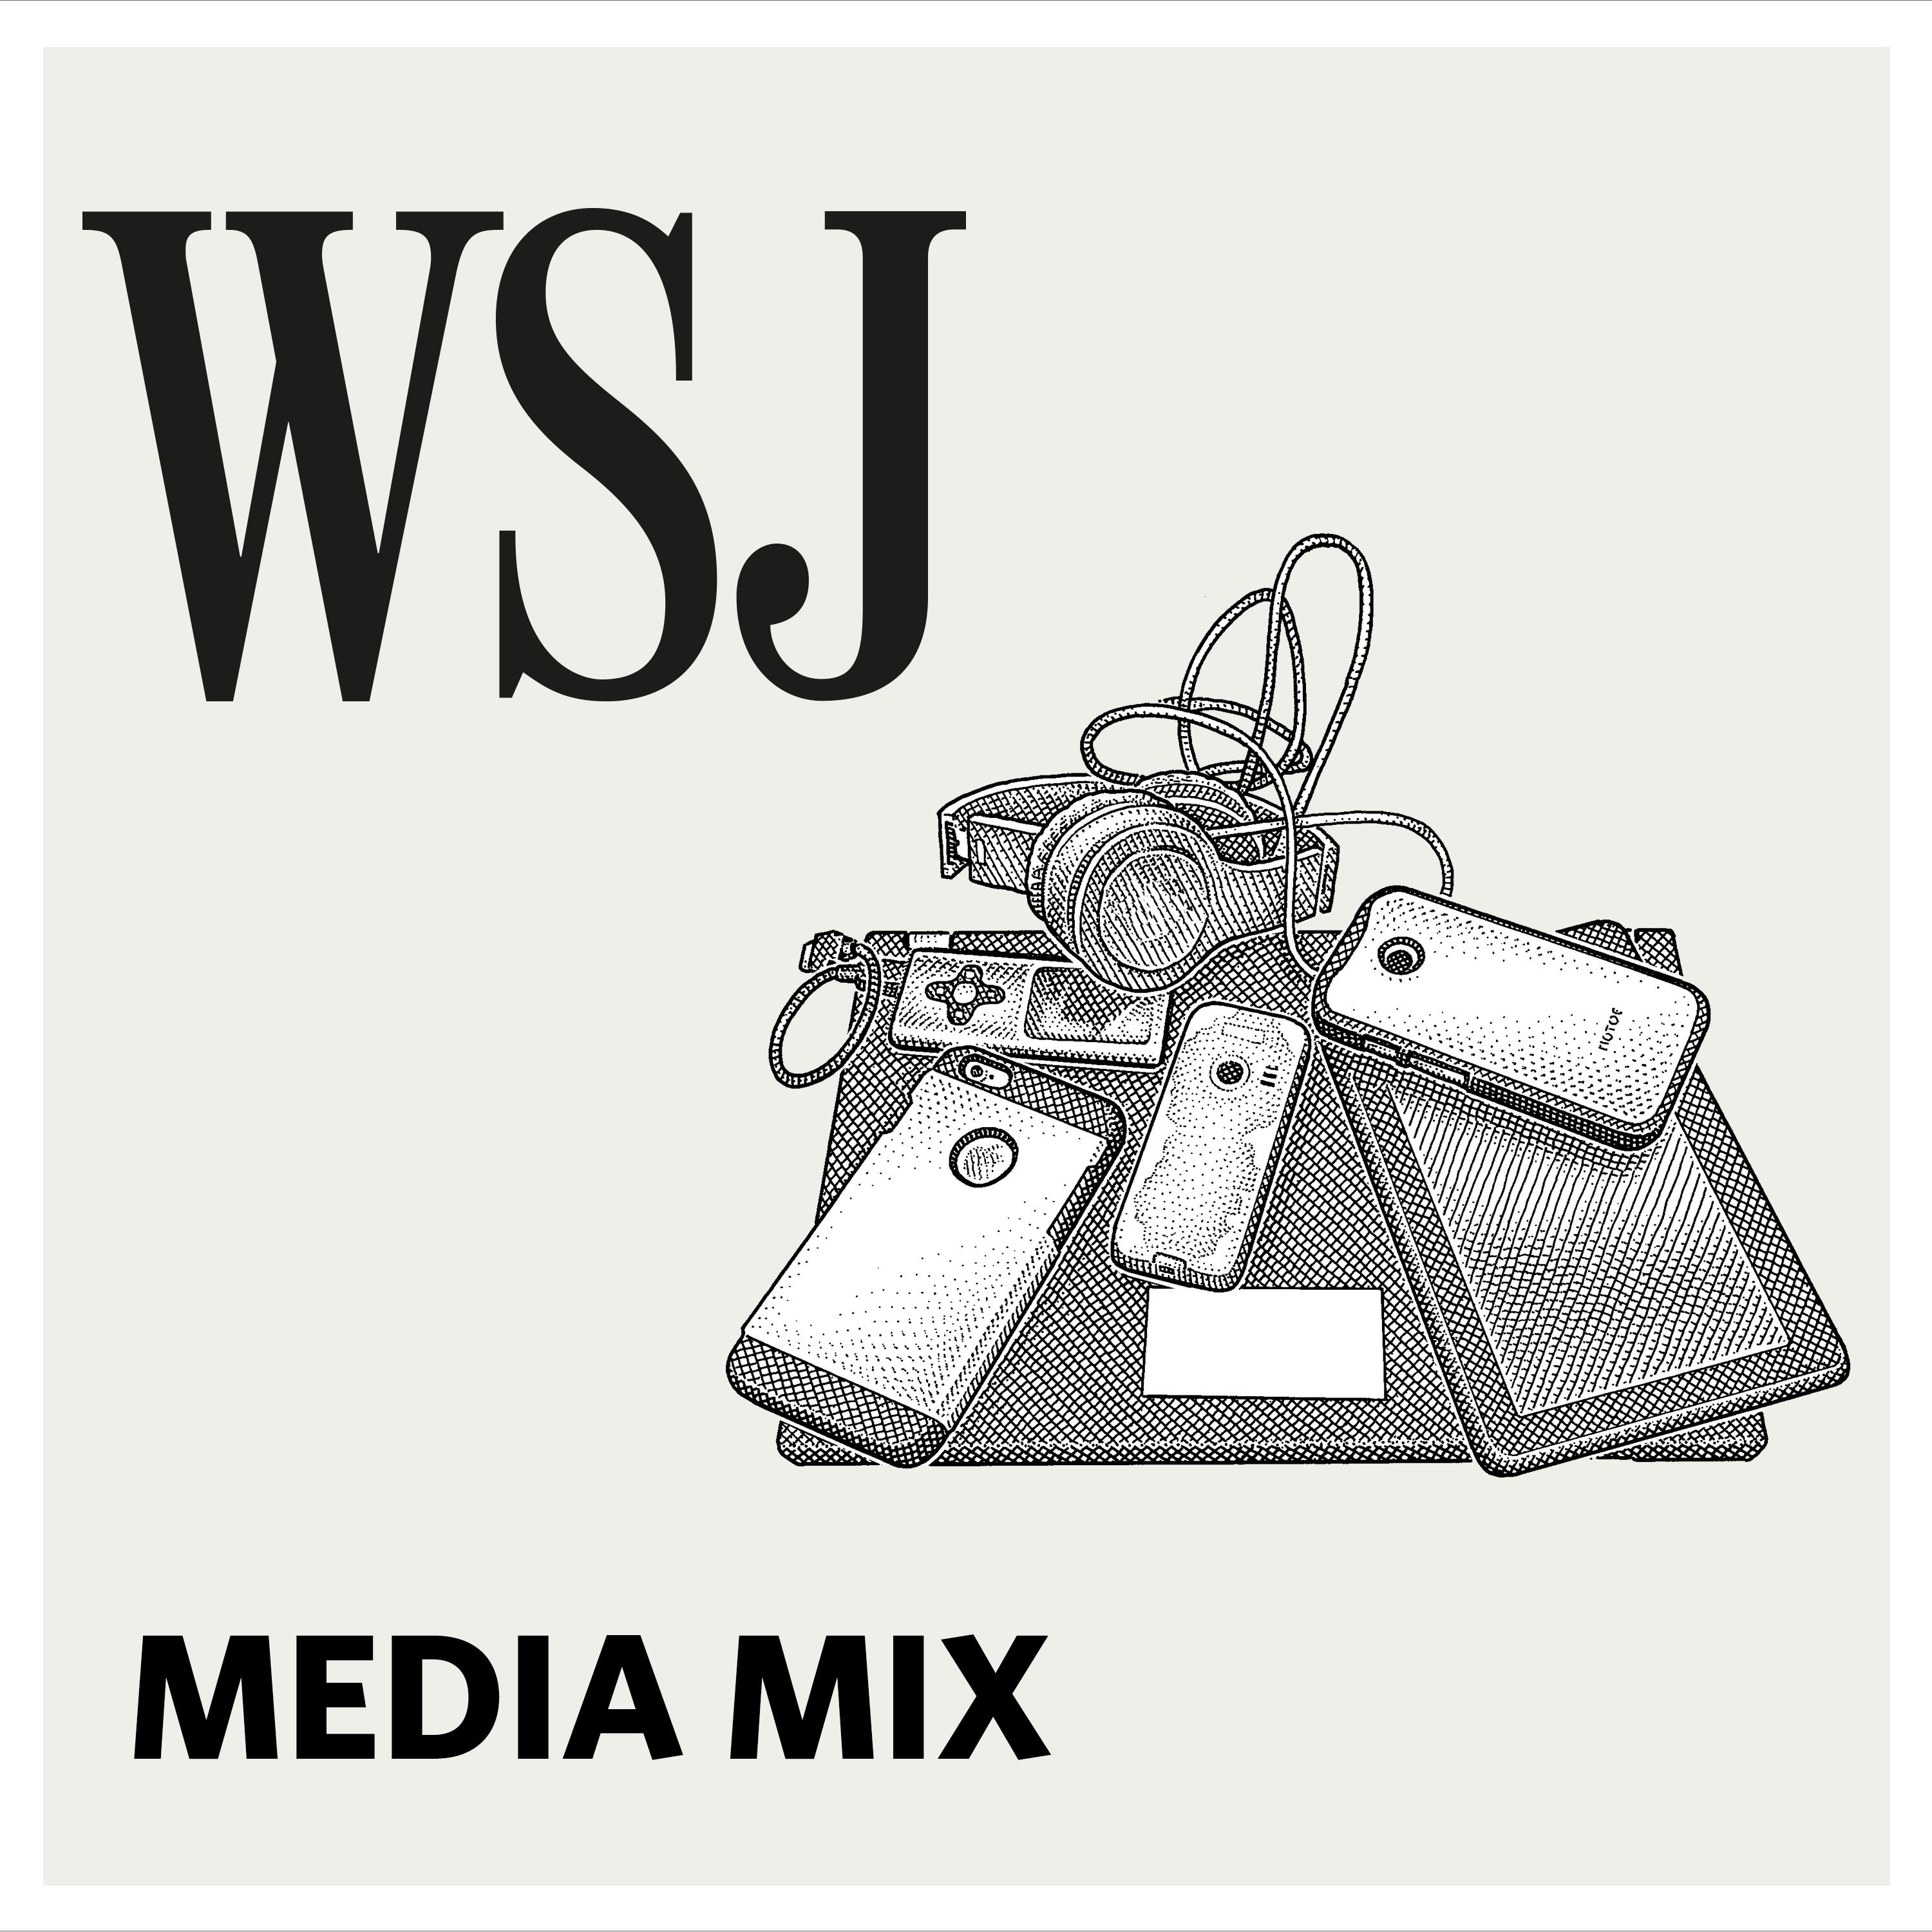 WSJ Media Mix:The Wall Street Journal